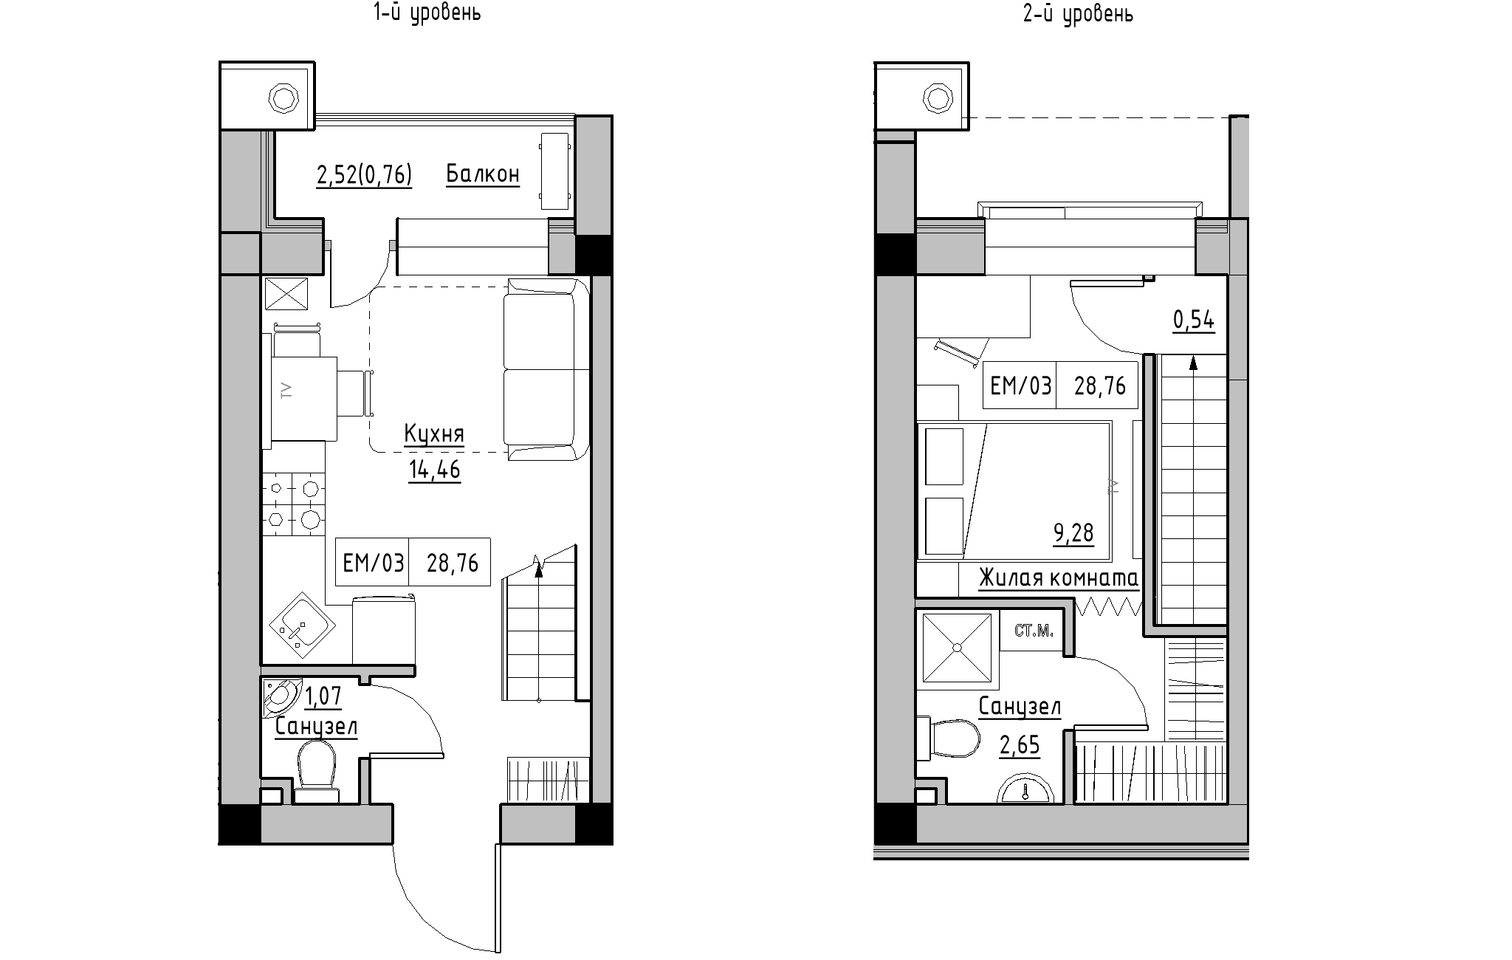 Planning 2-lvl flats area 28.76m2, KS-013-05/0011.